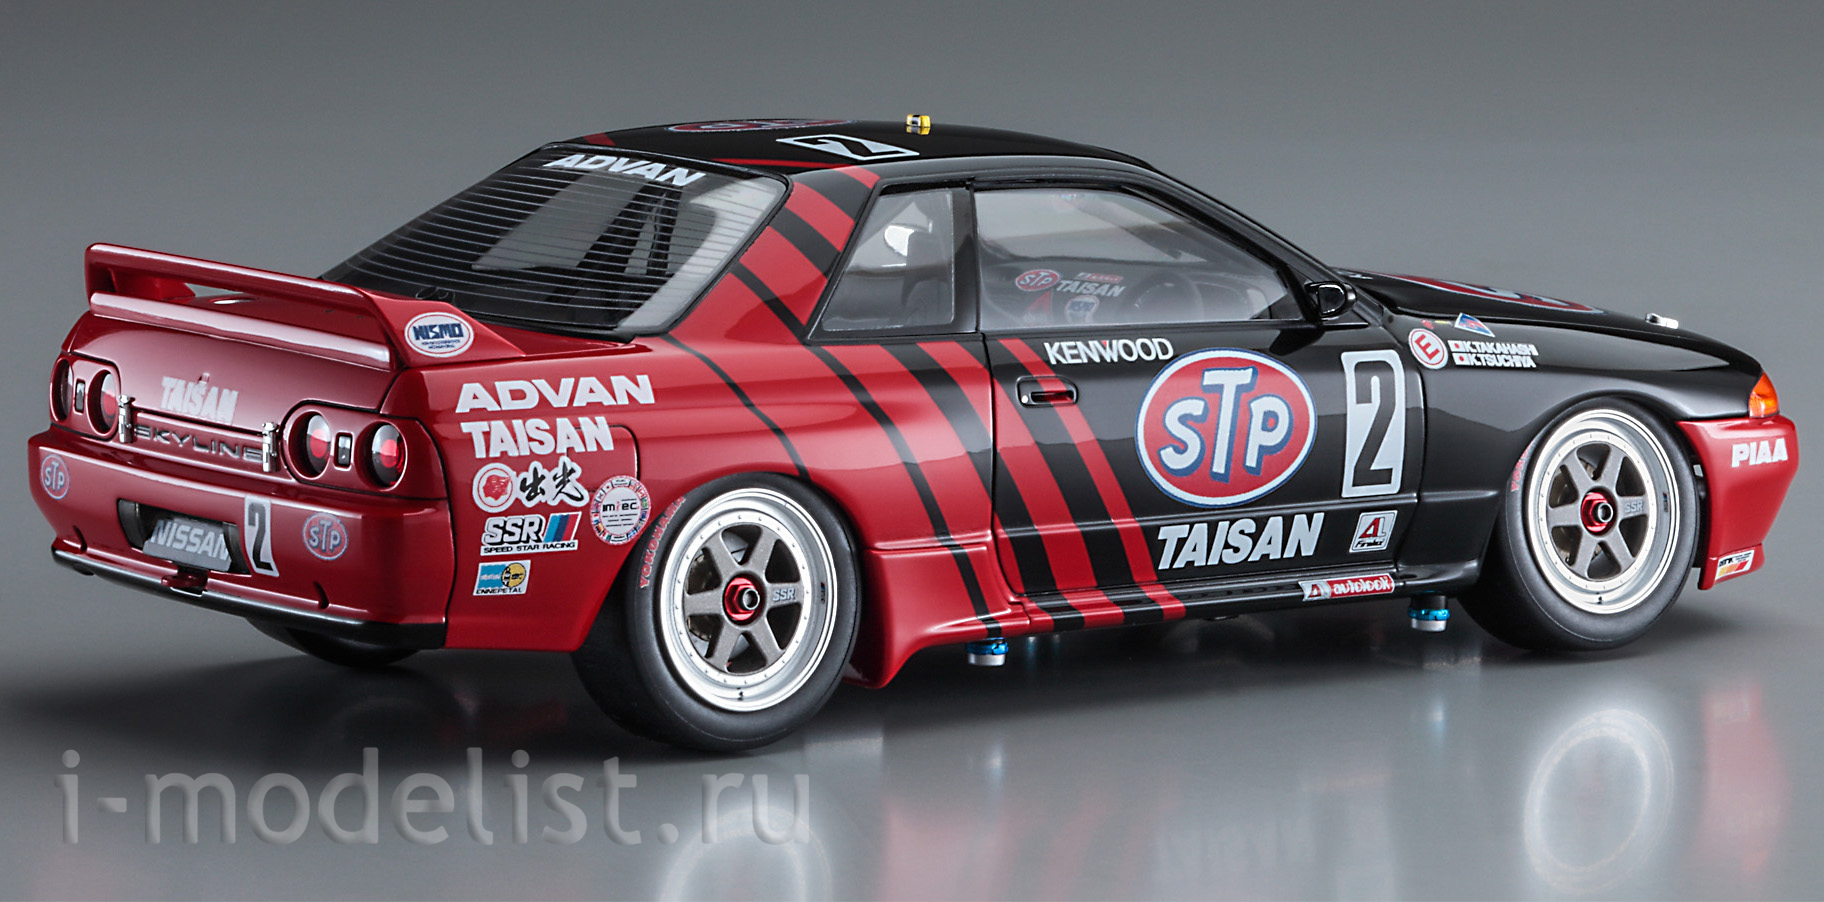 21141 Hasegawa 1/24 Car STP Taisan GT-R (Skyline GT-R [BNR32 Gr.A] 1993 JTC)